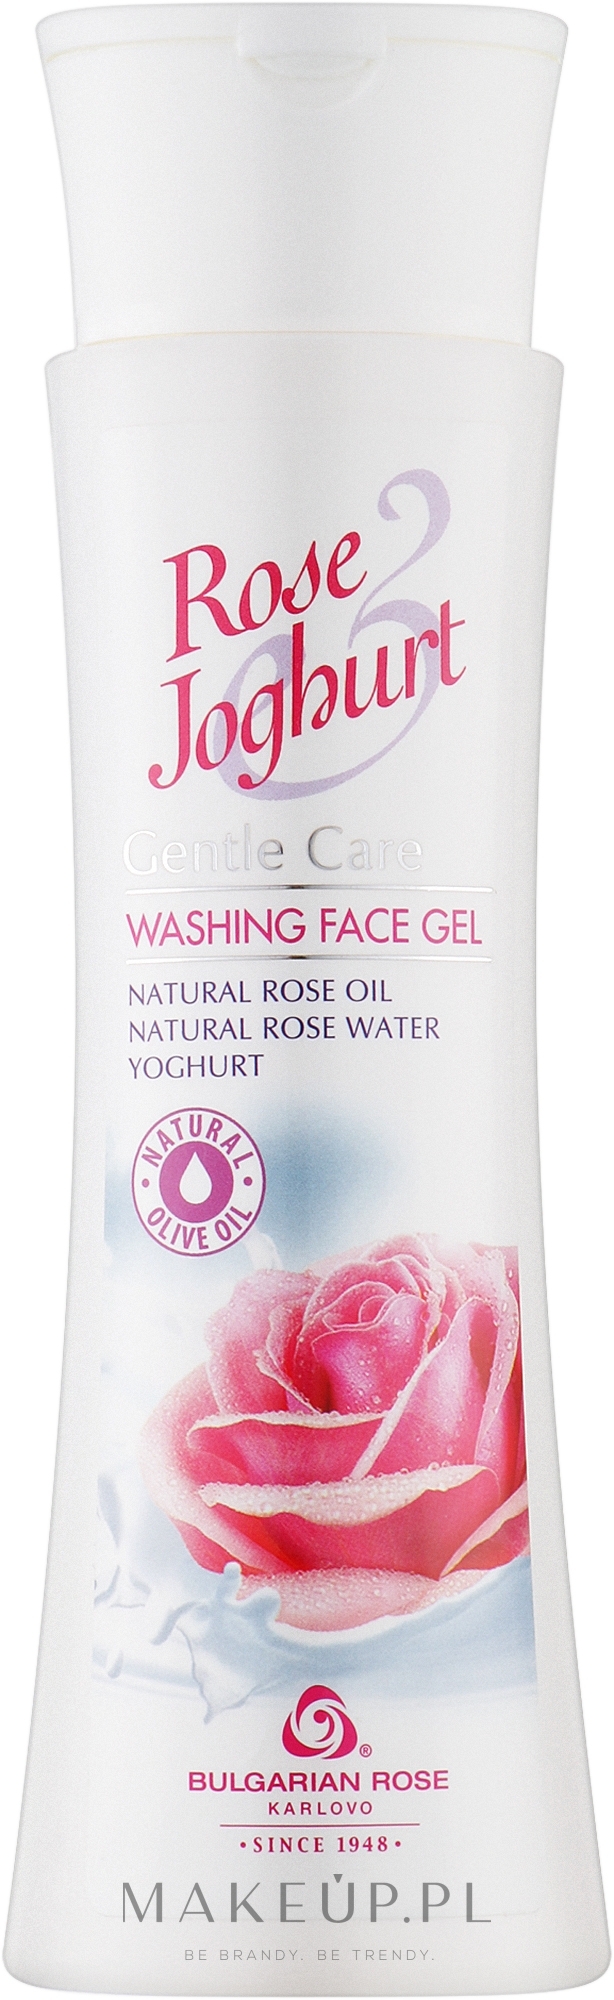 Oczyszczający żel do twarzy Róża i jogurt - Bulgarian Rose Rose & Joghurt Gentle Care Washing Face Gel — Zdjęcie 200 ml